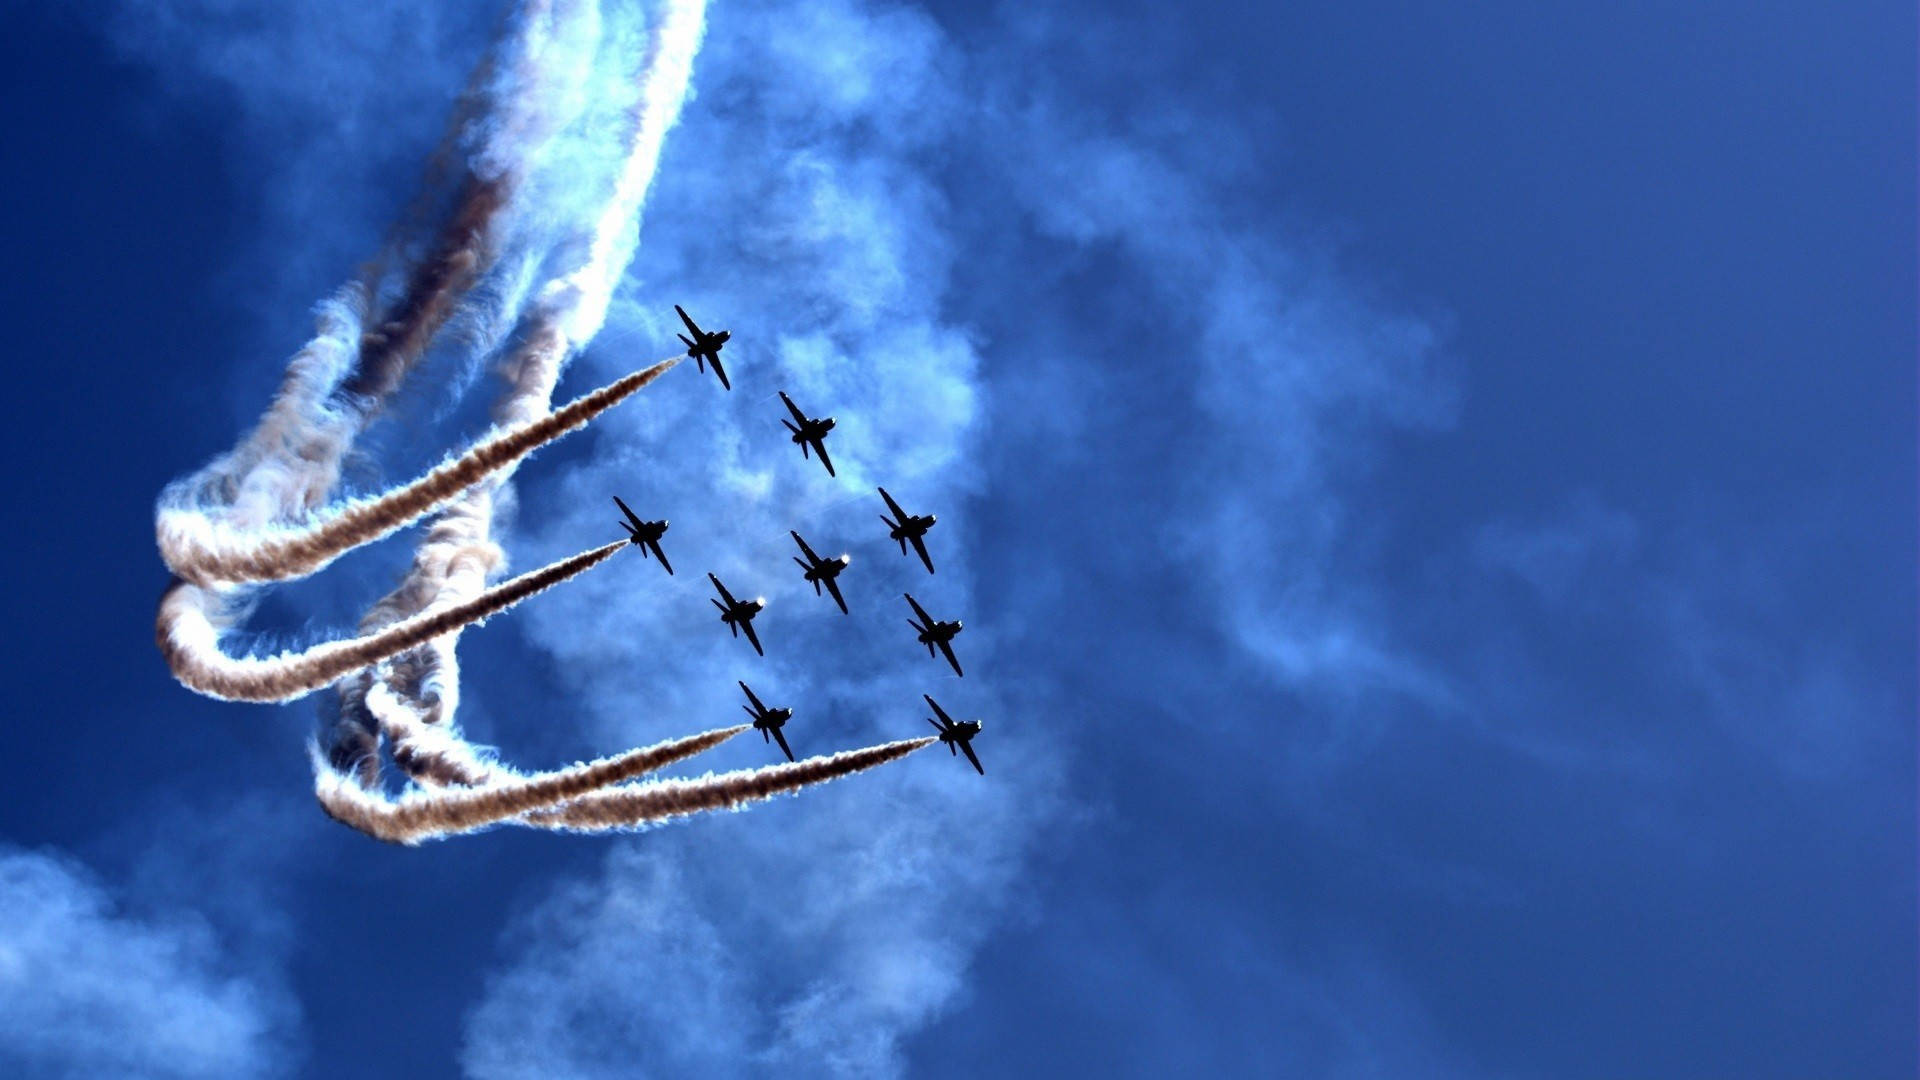 of Its Engines Flying Over the Clouds - Air Force Jets med efterladte spor af deres motorer, som flyver over skyerne Wallpaper